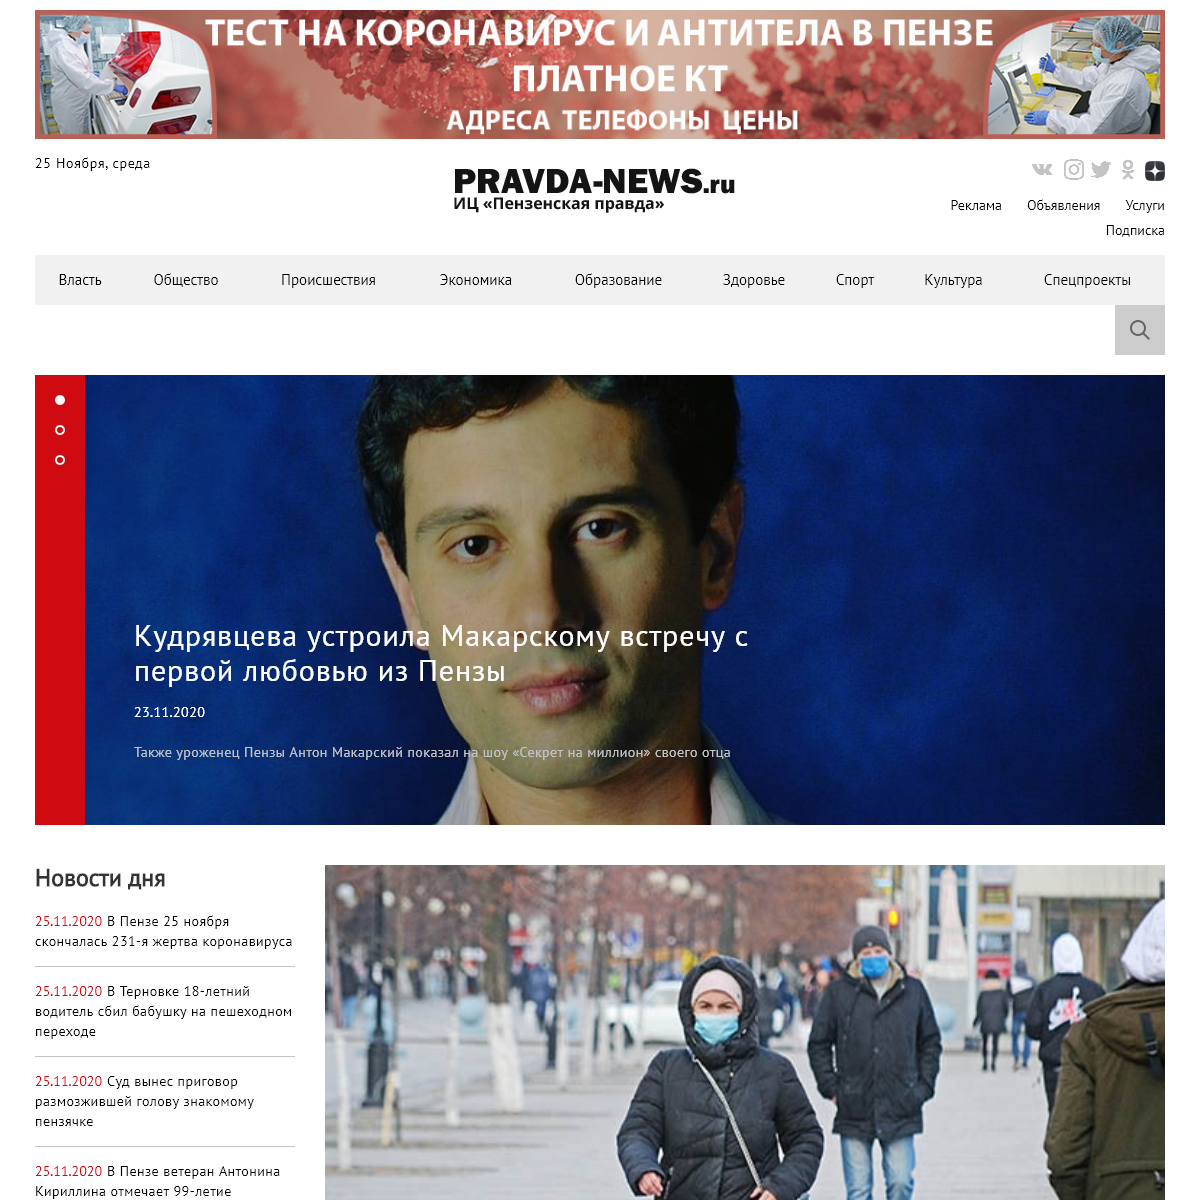 A complete backup of pravda-news.ru